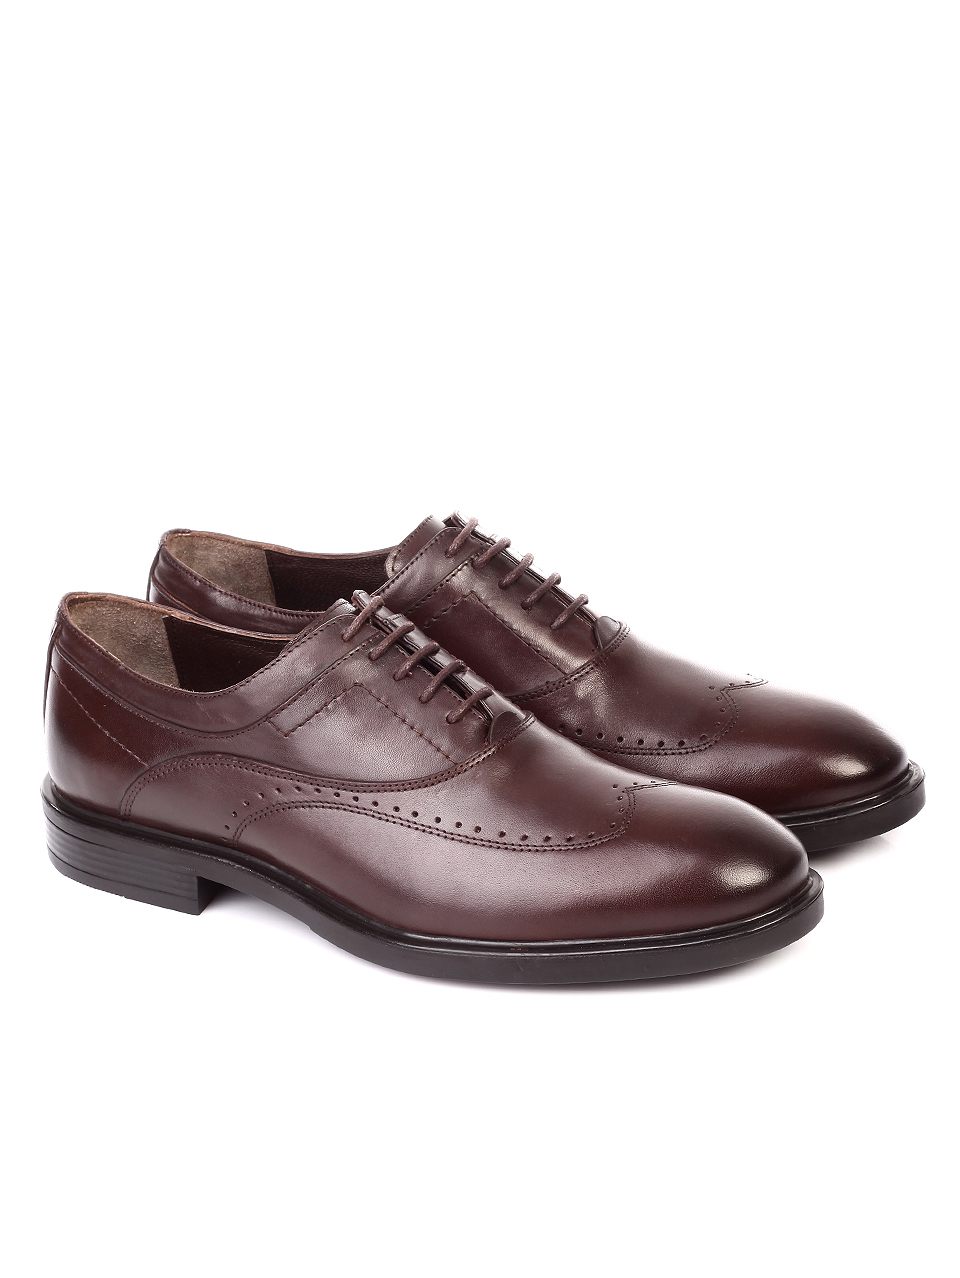 Елегантни мъжки обувки от естествена кожа 7AT-19946 brown